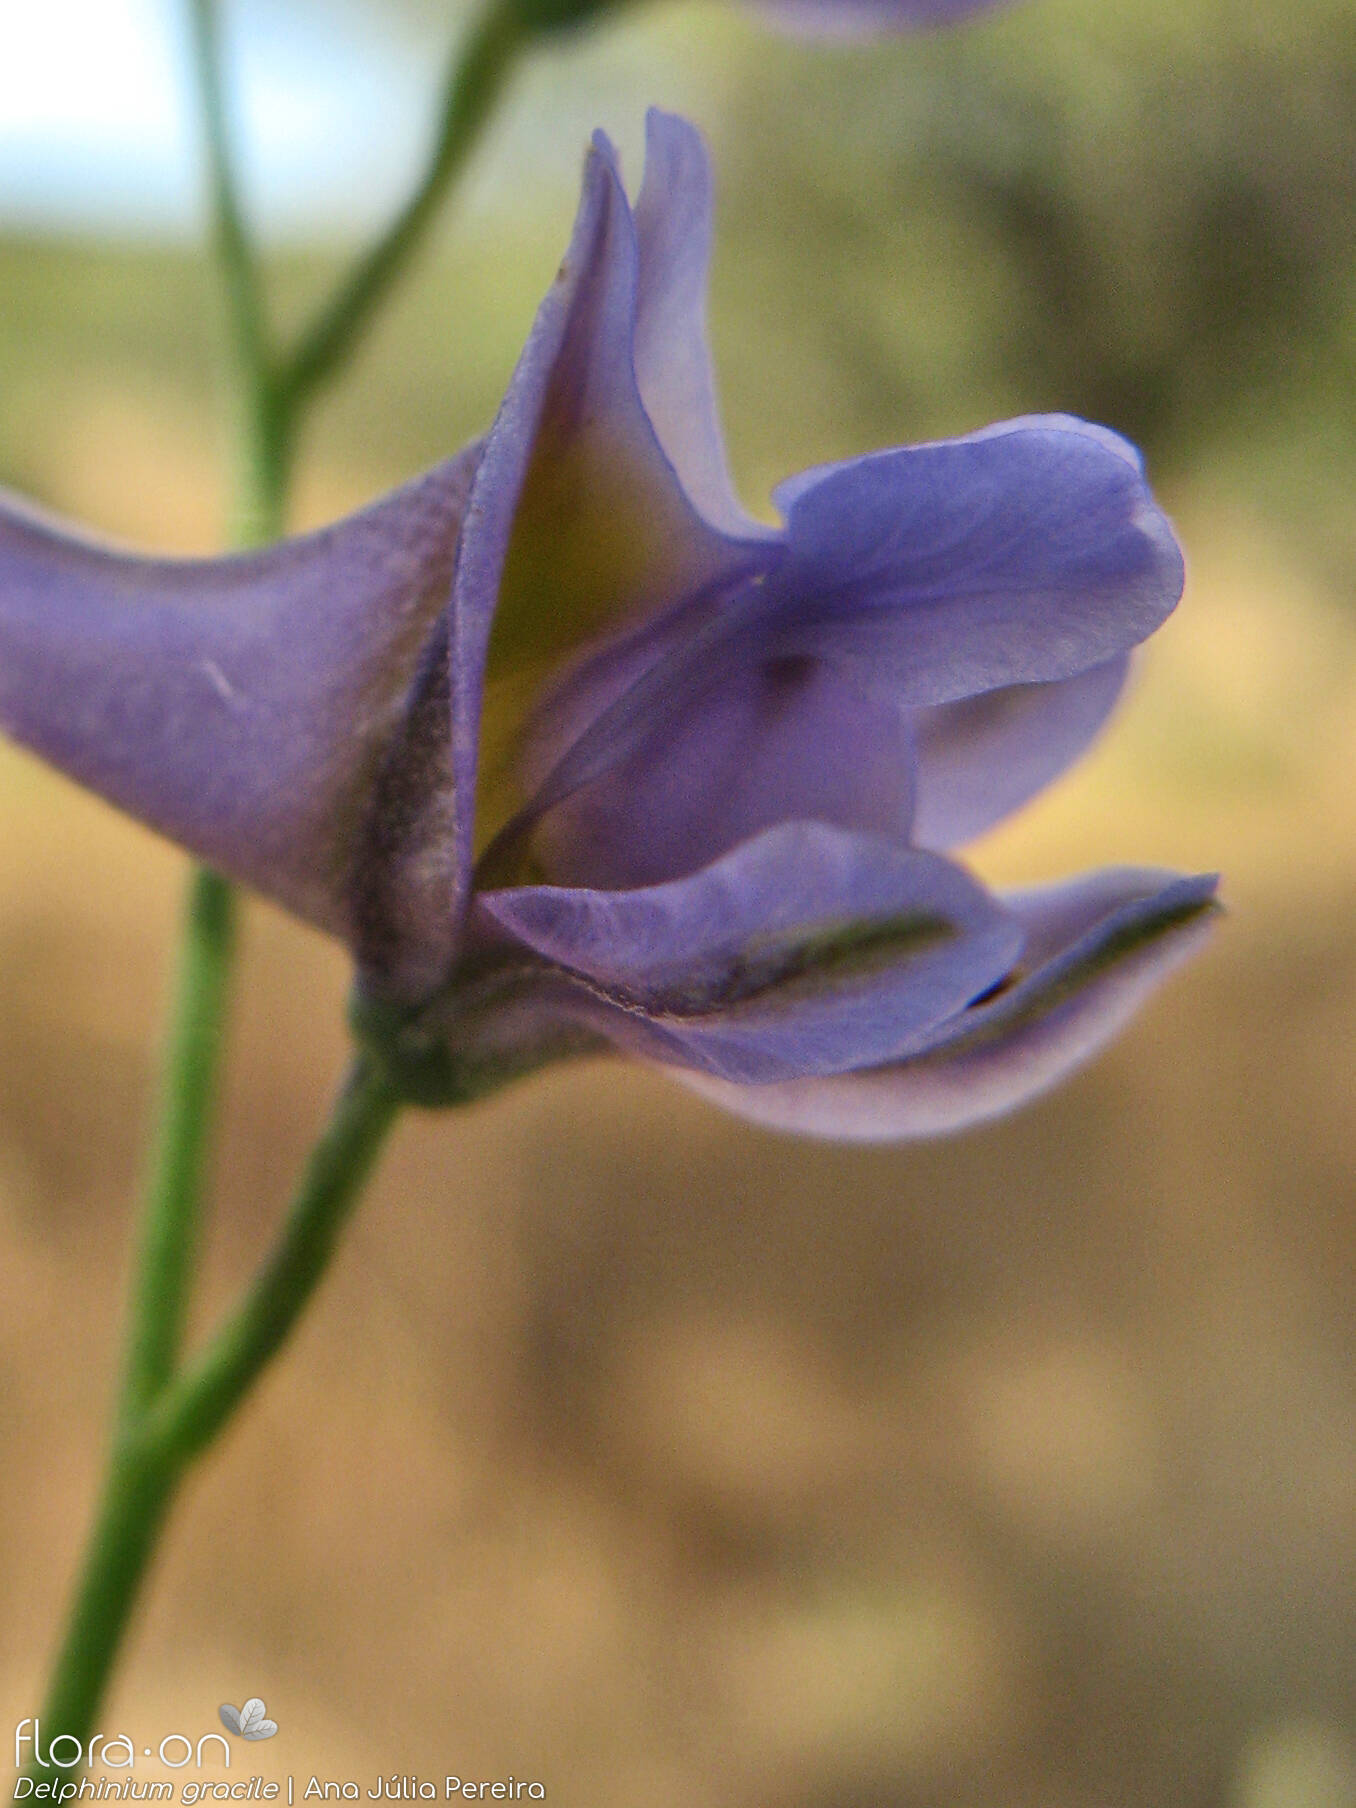 Delphinium gracile - Flor (close-up) | Ana Júlia Pereira; CC BY-NC 4.0